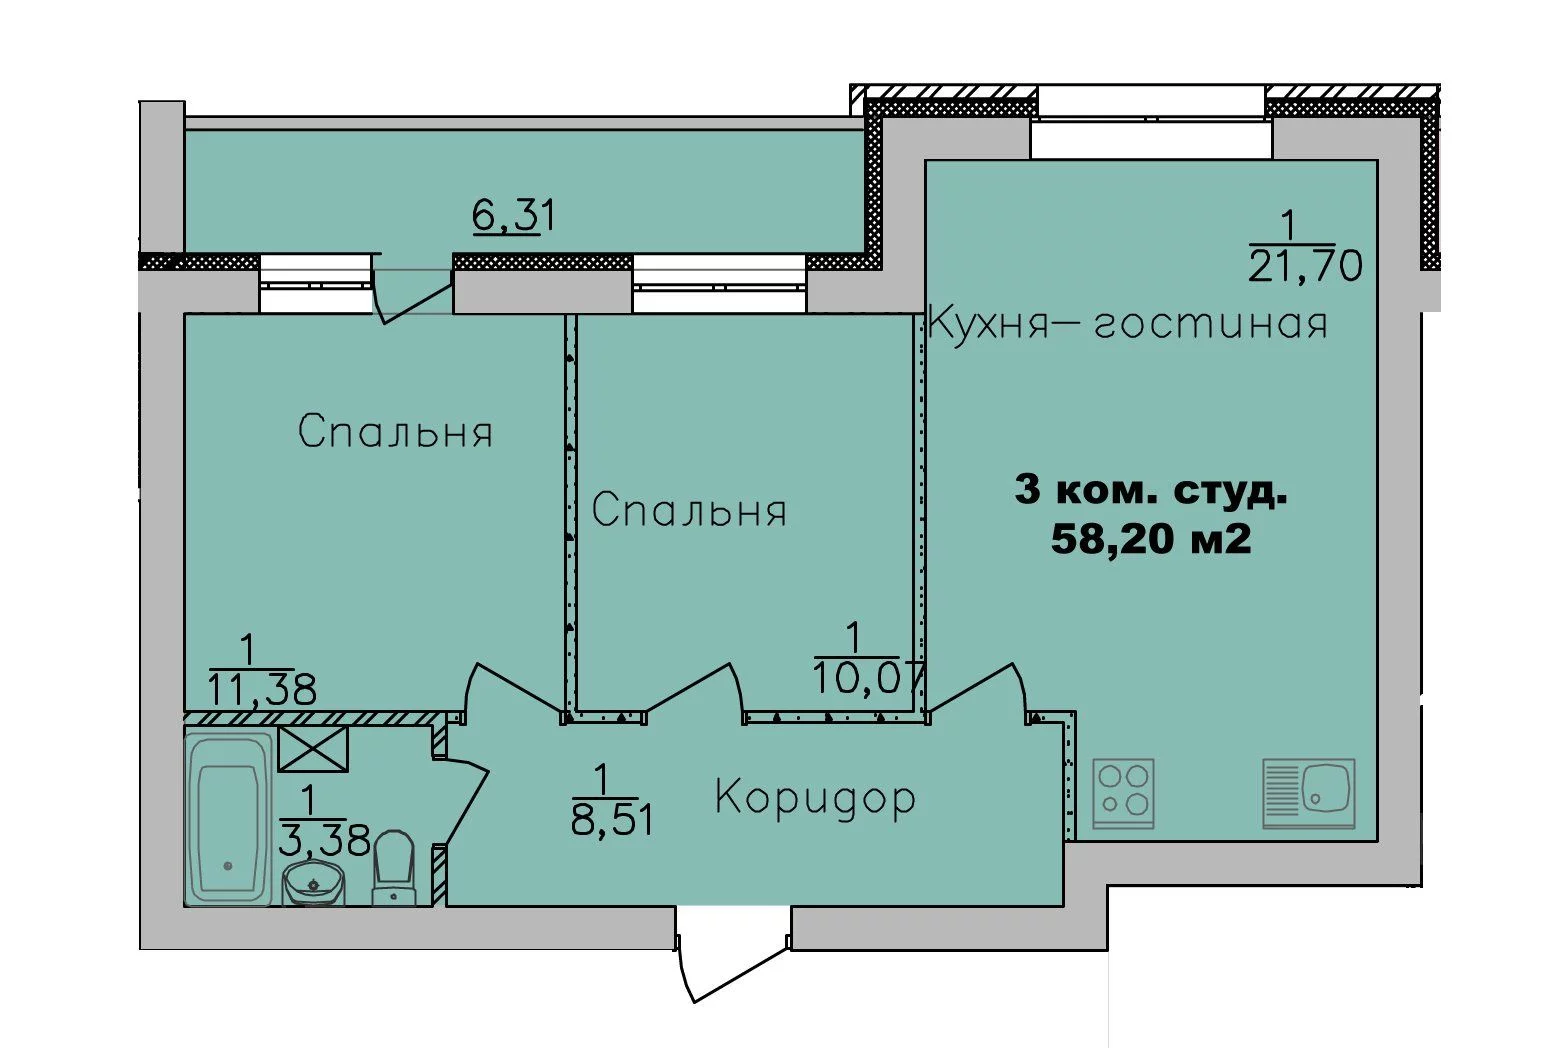 ЖК Дивногорский, дом 24, планировка трёхкомнатная-студия 58,2 м2